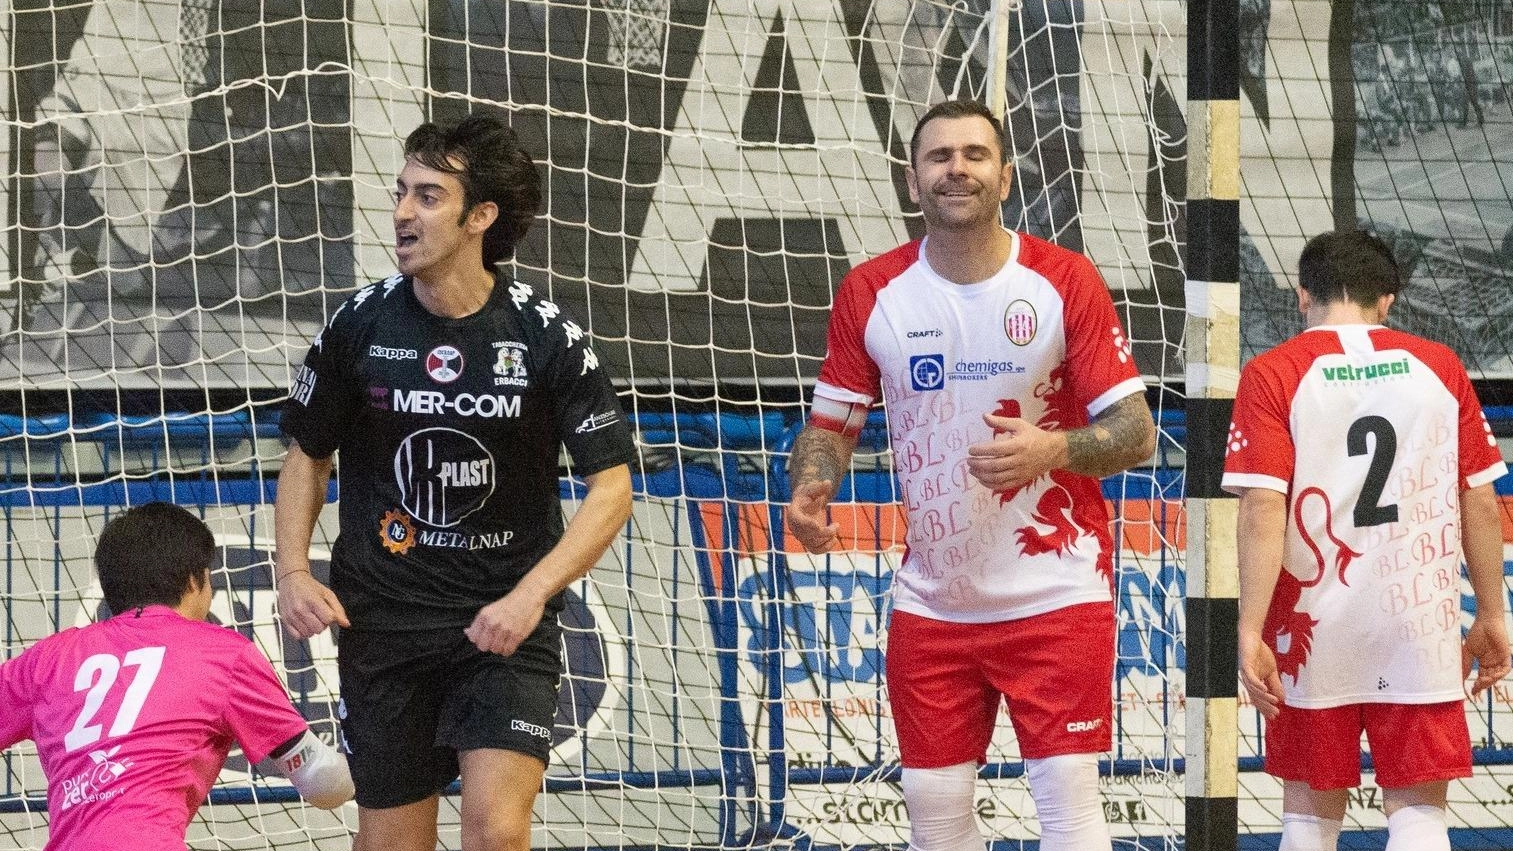 Futsal, la Mernap stende il Baraccaluga e aggancia il 3°posto